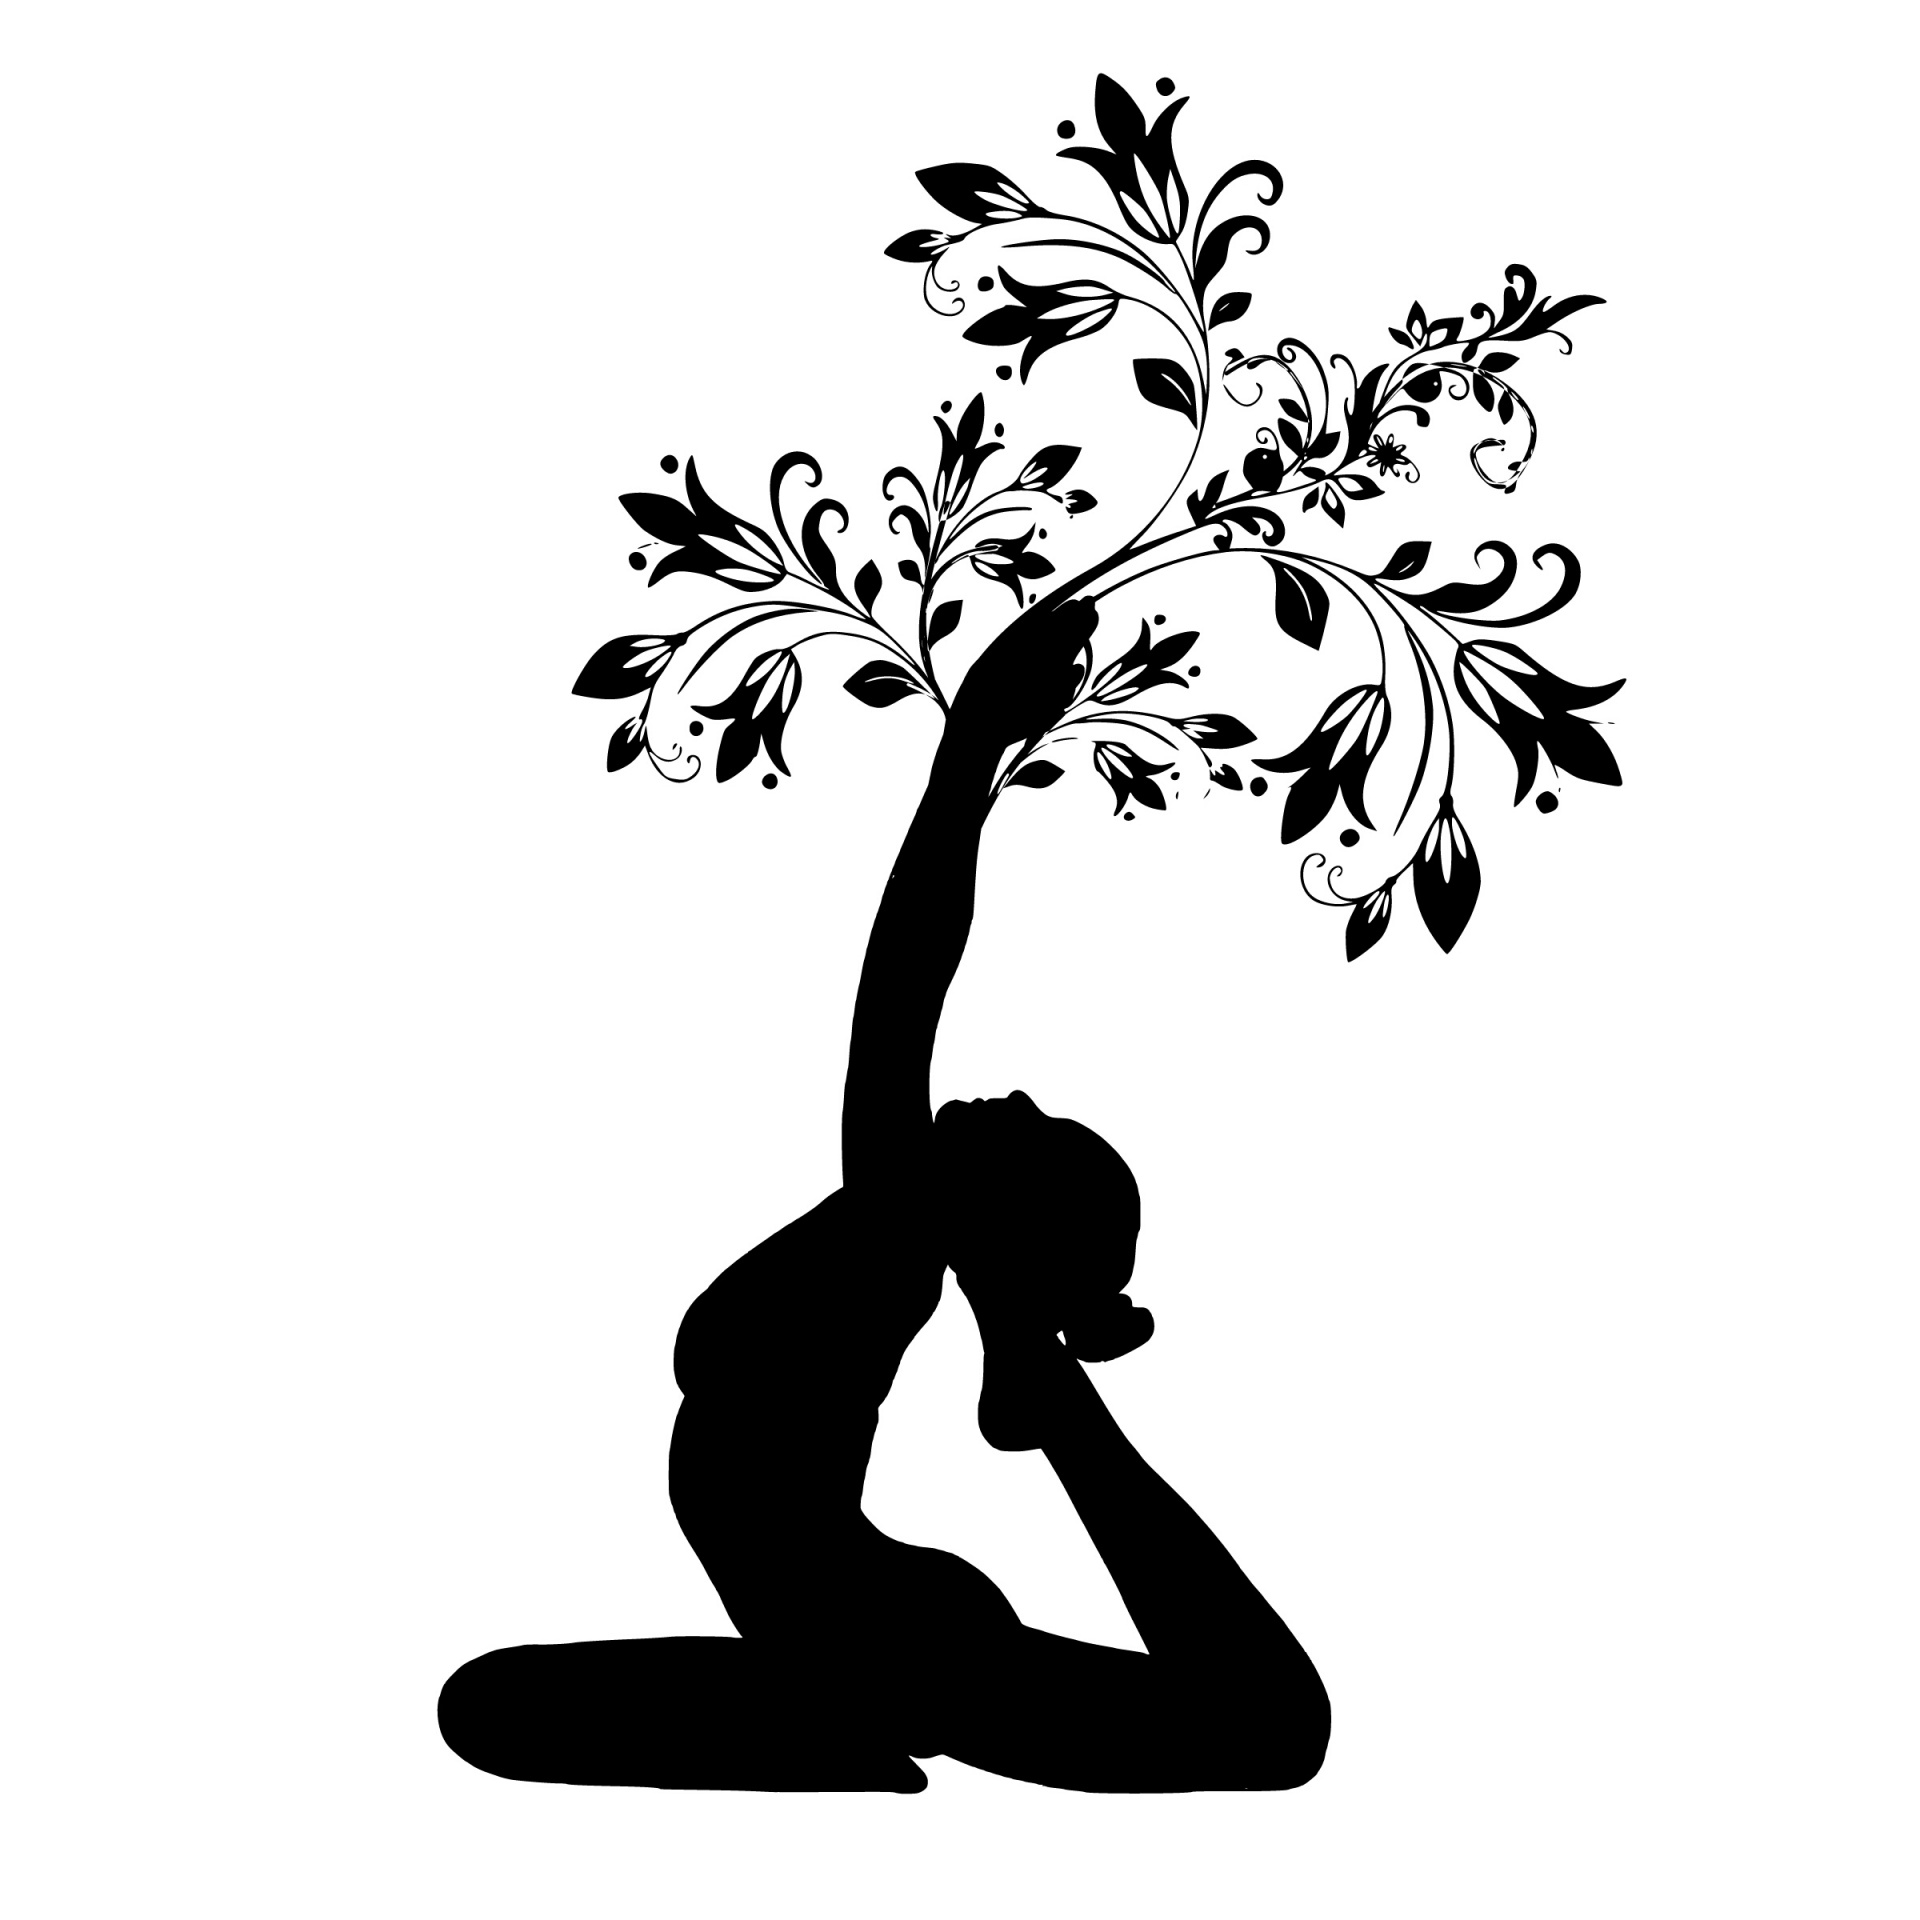 yoga tree